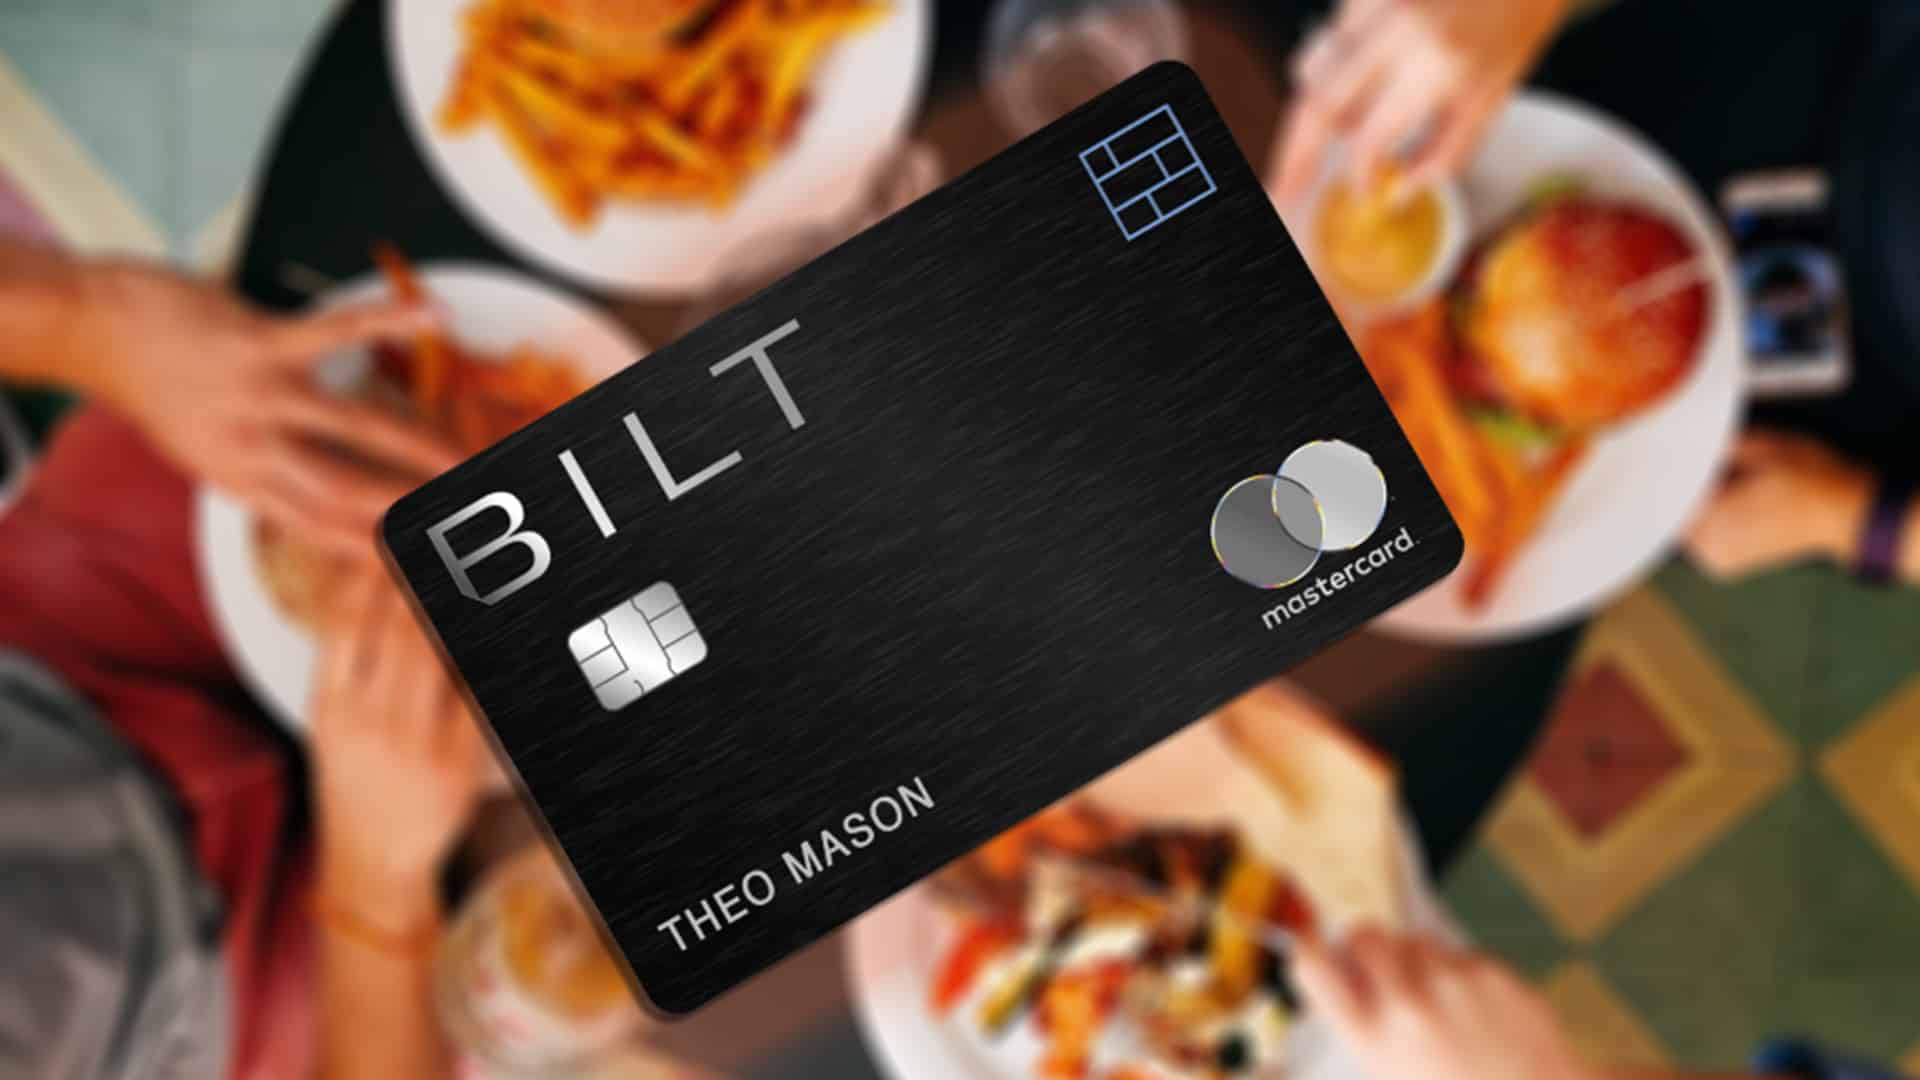 Bilt mastercard rewards for dining